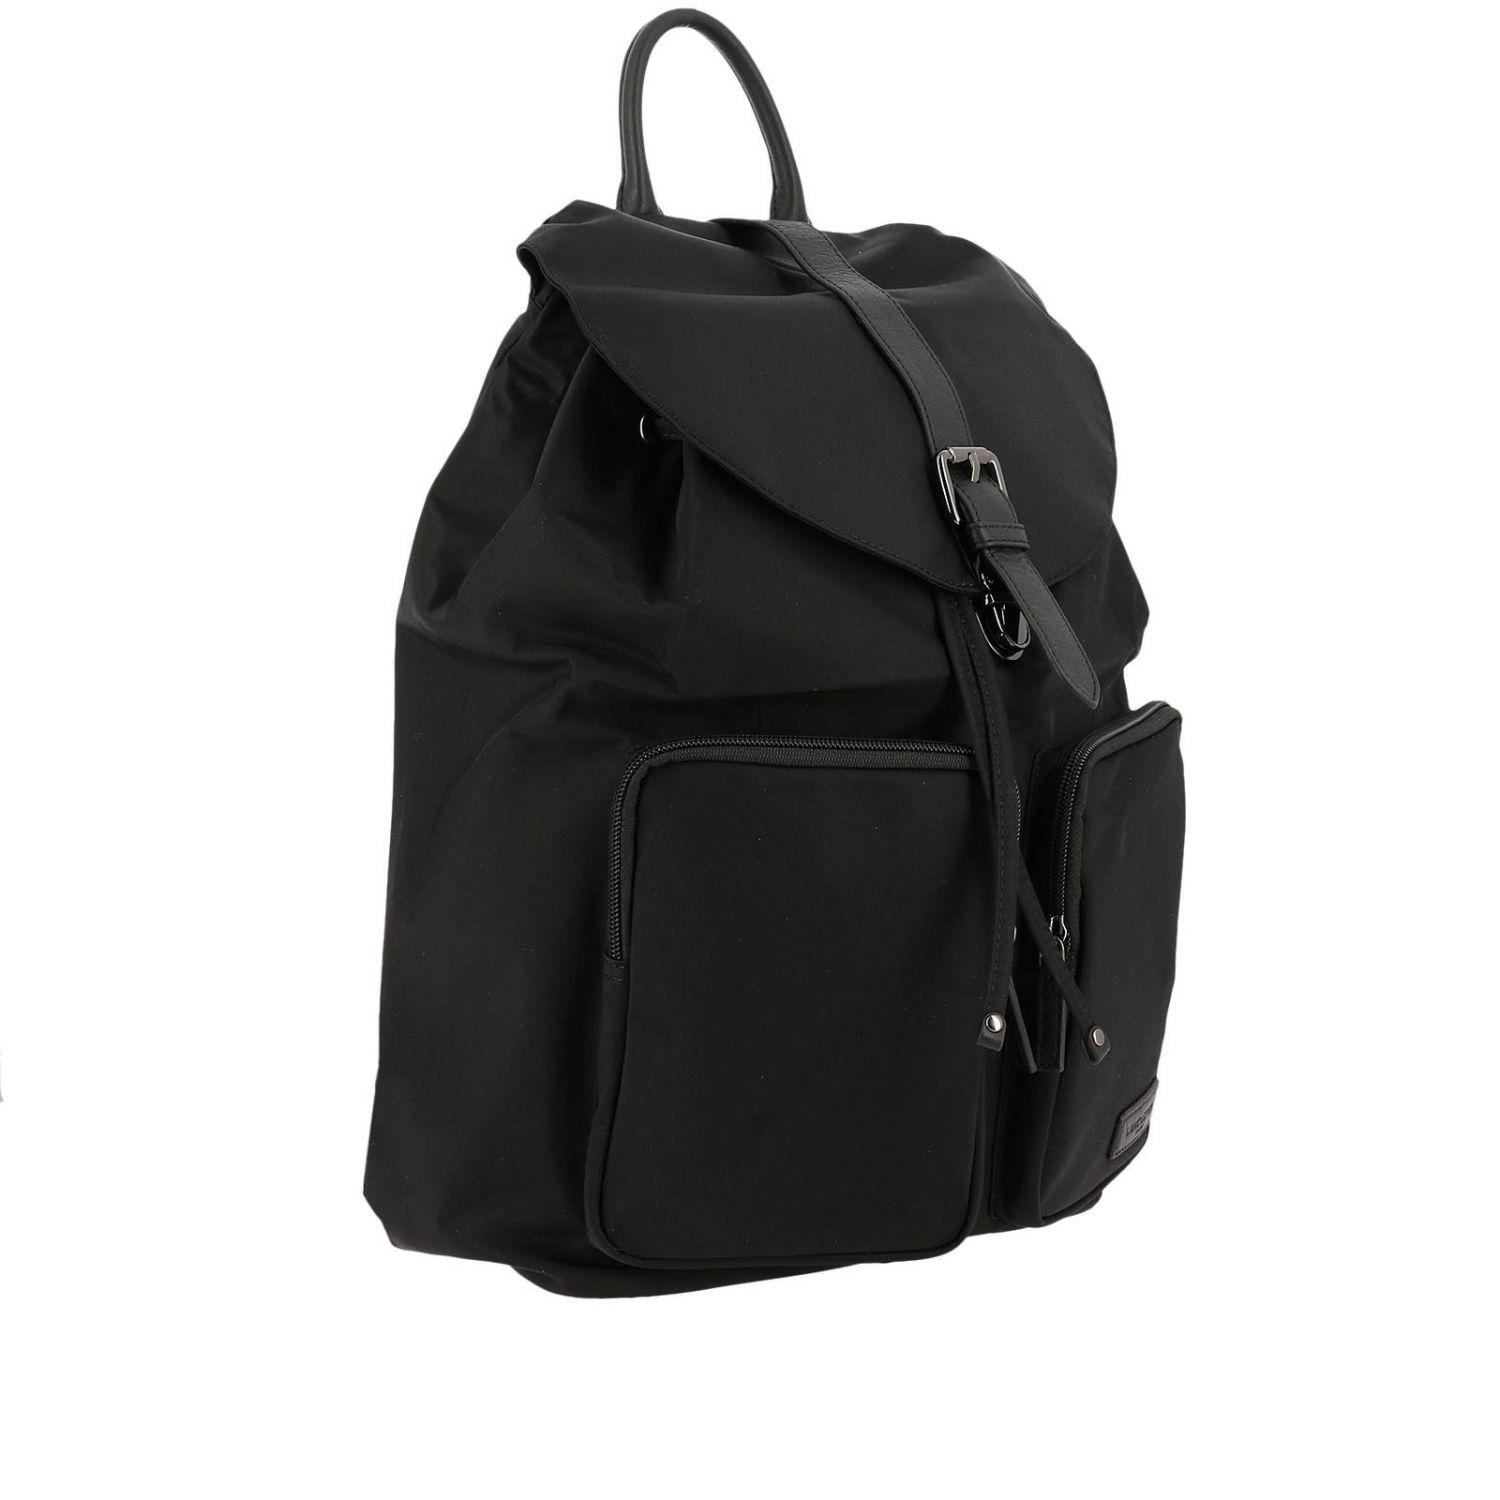 Lancaster Leather Backpack Shoulder Bag Women in Black - Lyst